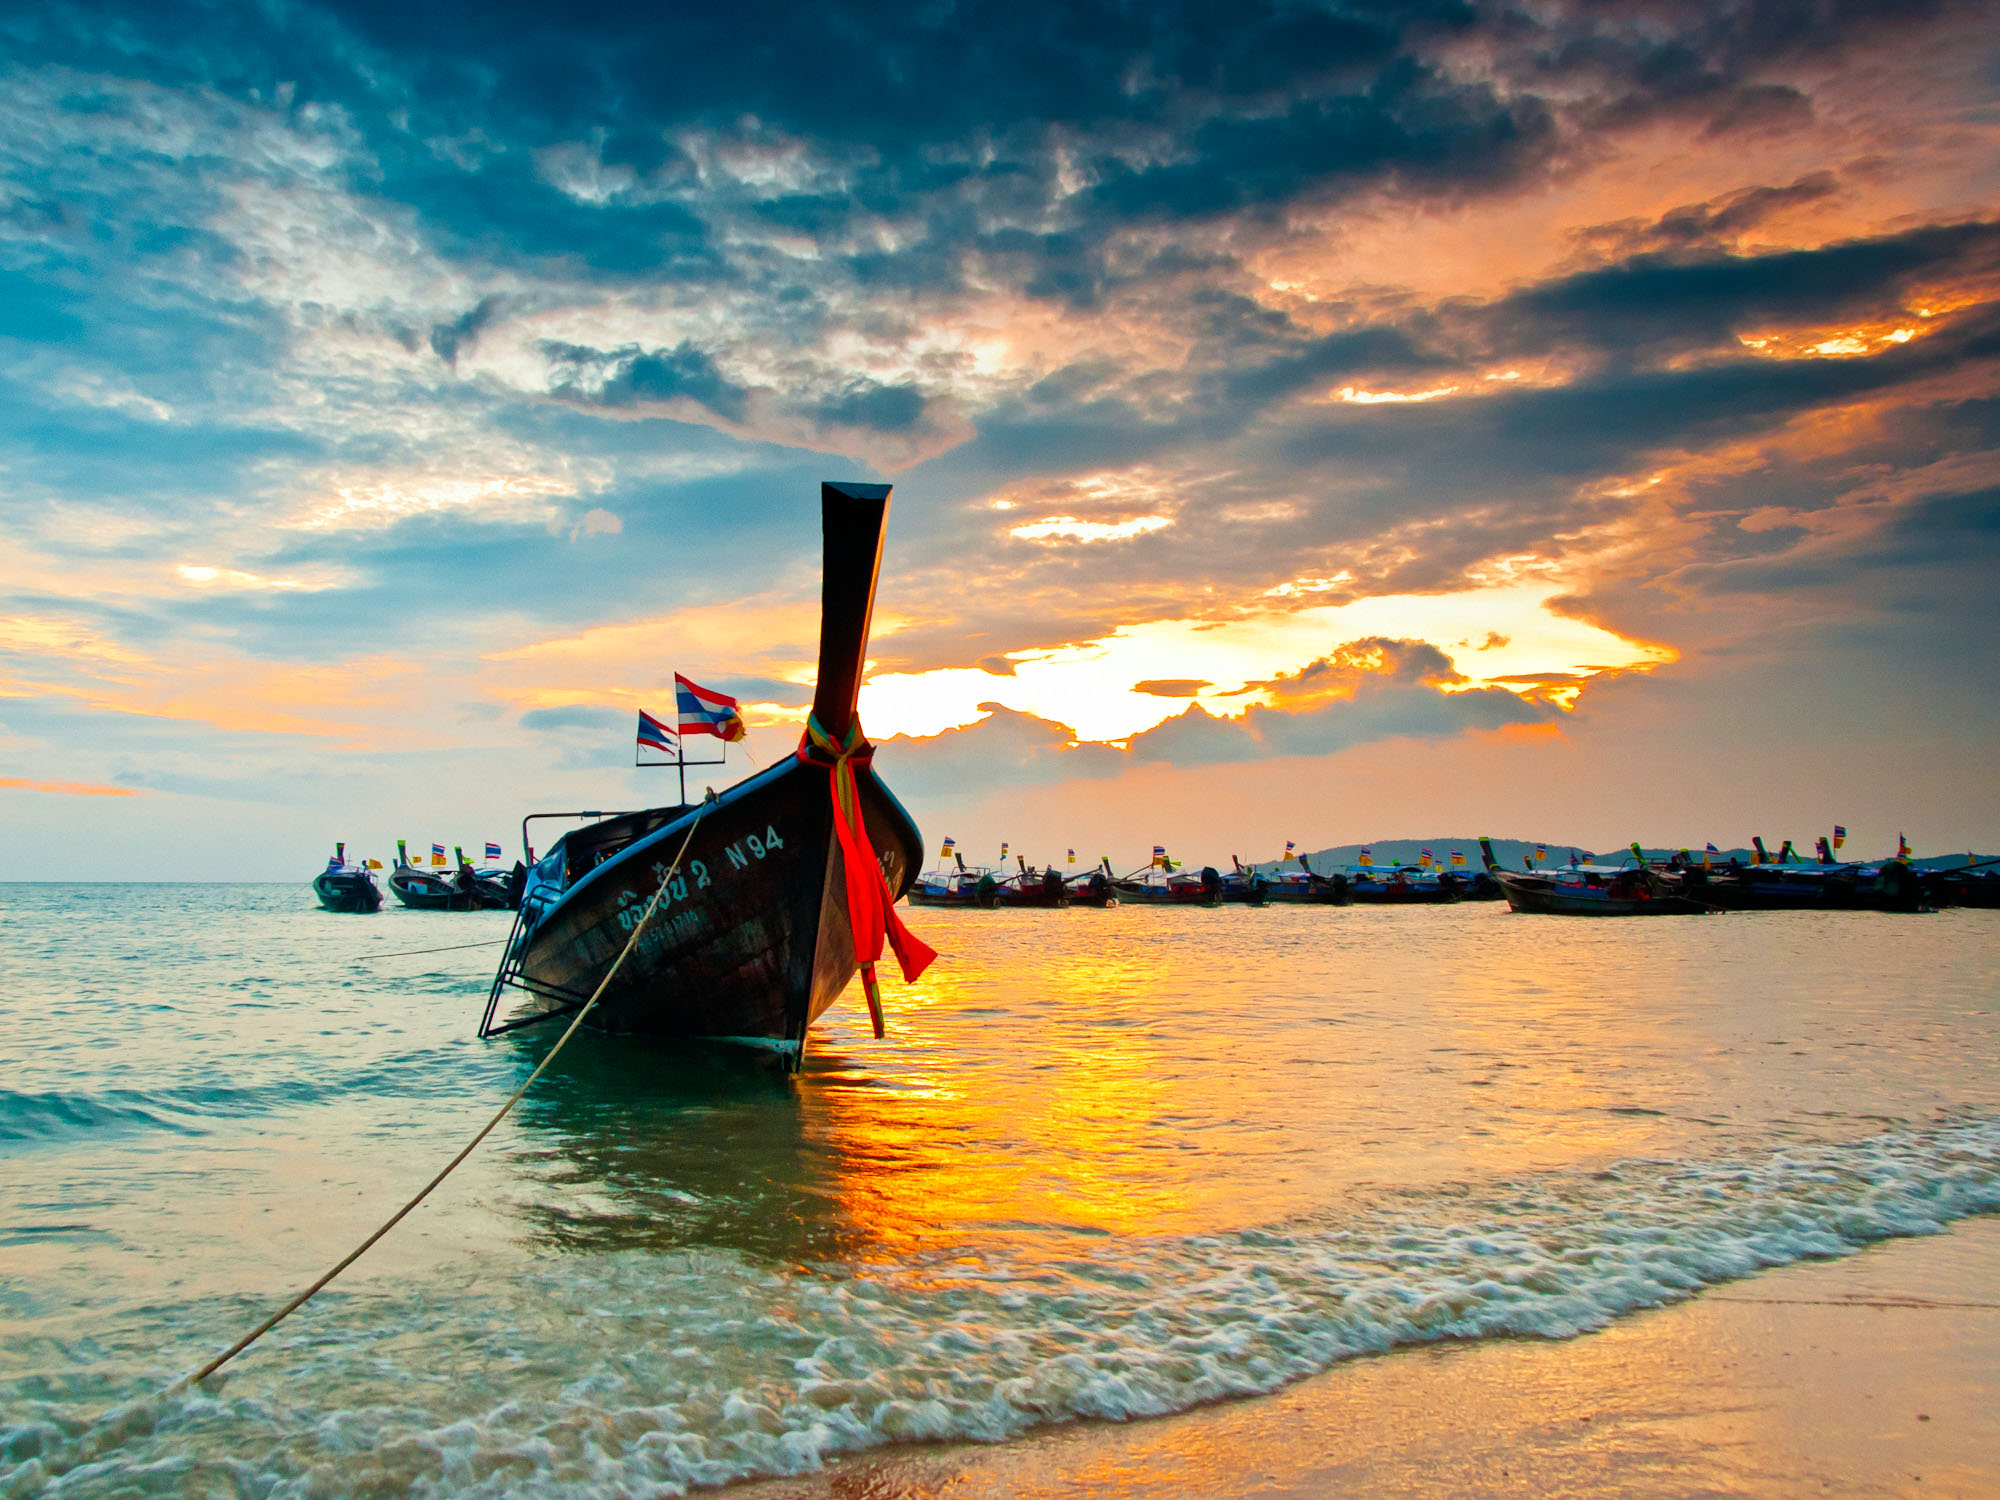 A Longboat Ashore in Krabi, Thailand